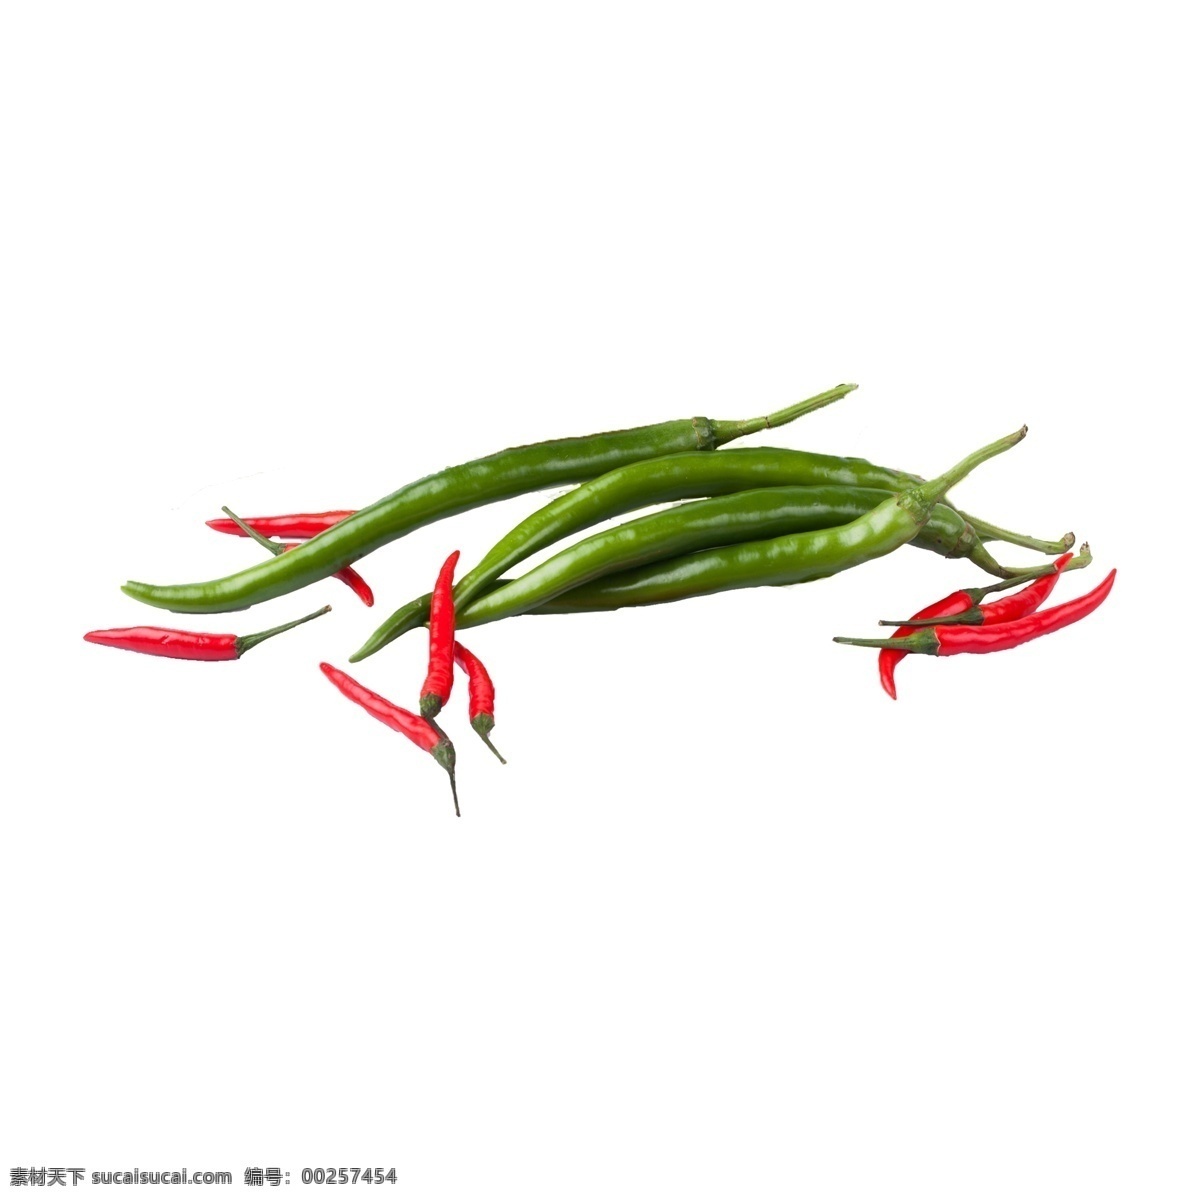 辣椒 组合 实物 拍摄 免 抠 尖椒 红辣椒 小米椒 红 植物 红色 绿色 辣椒免抠 麻辣 川椒